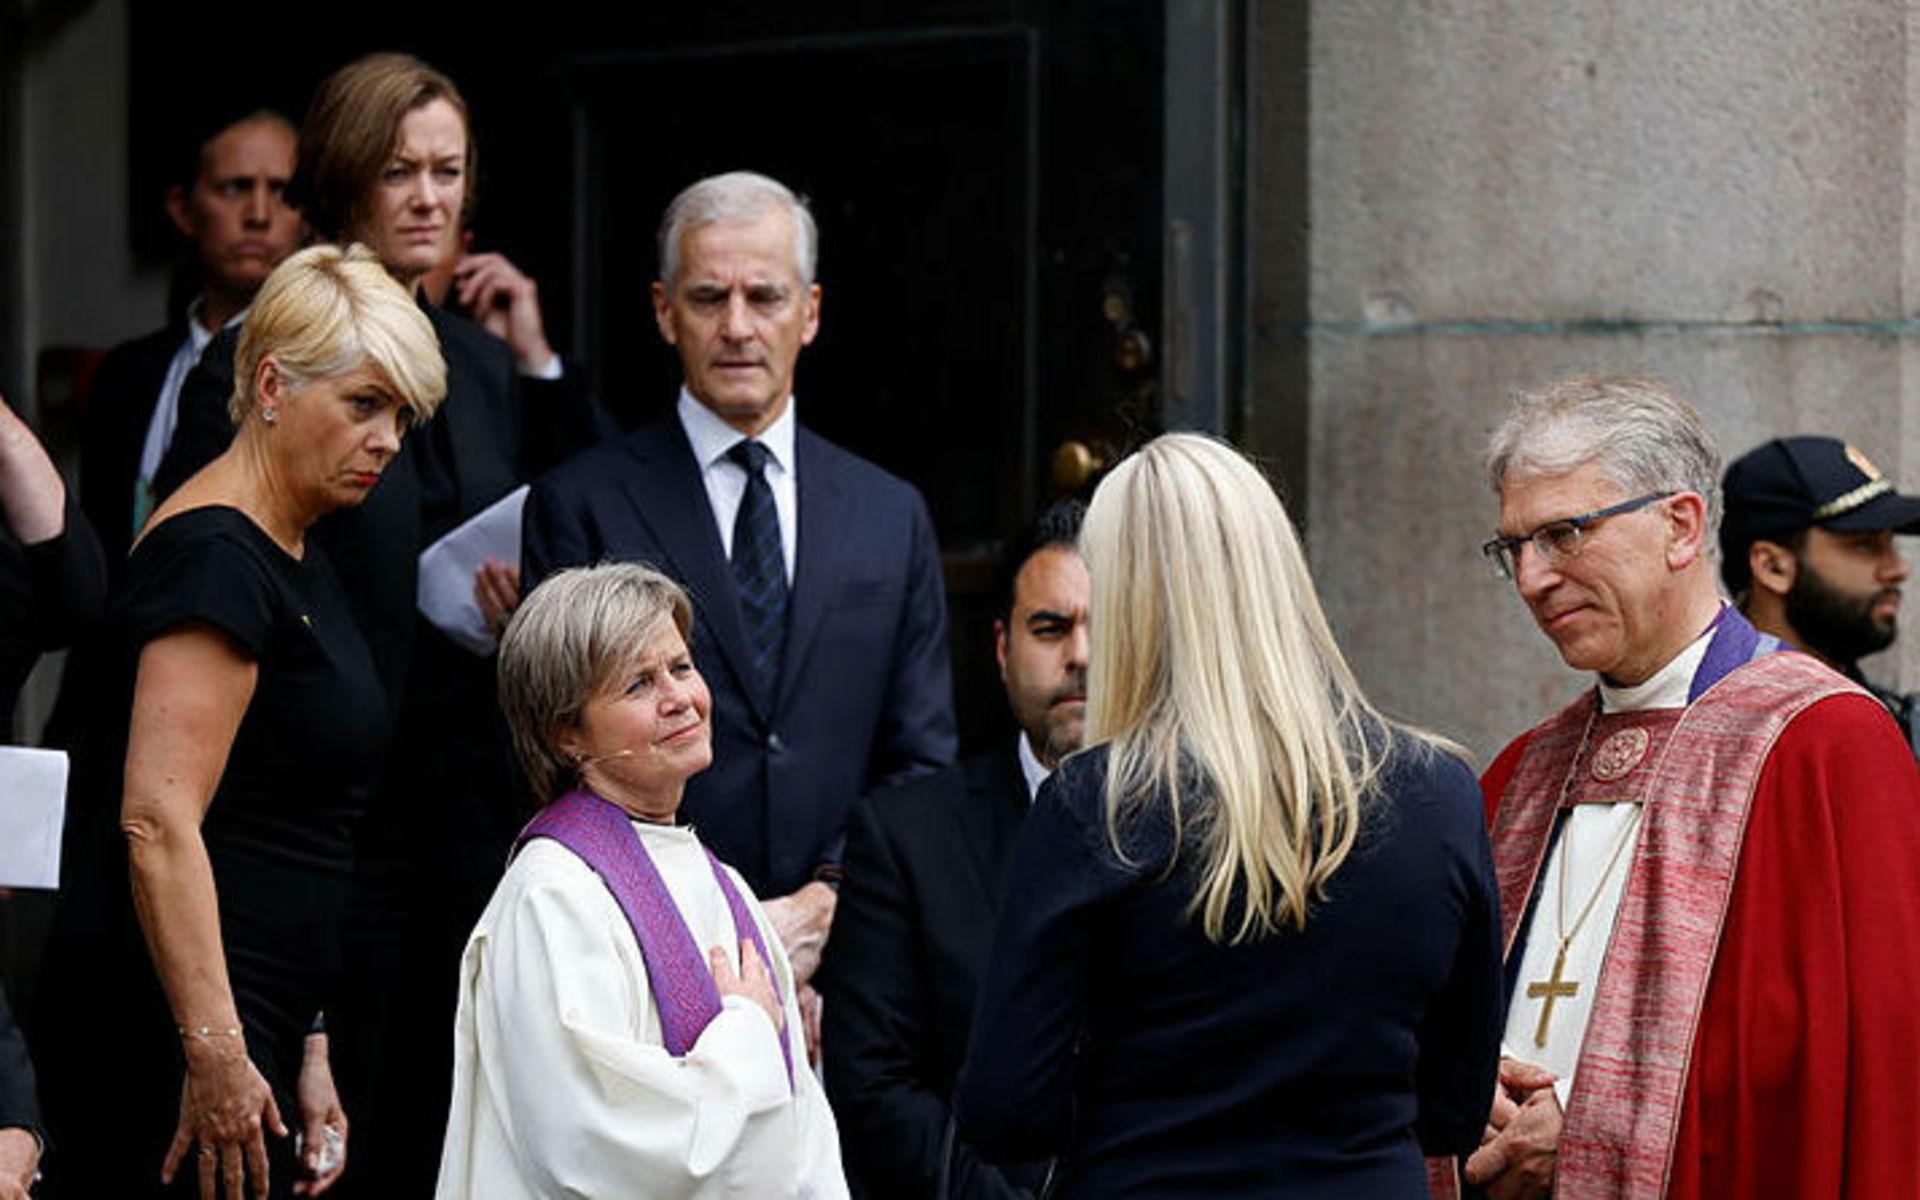 Utanför Oslo domkyrka samlades bland annat Anette Trettebergstuen (bakom statsministern), kultur- och jämställdhetsminister i Norge, Kristin Gunleiksrud Raaum (till vänster om statsministern), ledare av kyrkorådet och Anne-May Grasaas (framför statsministern), domprost.